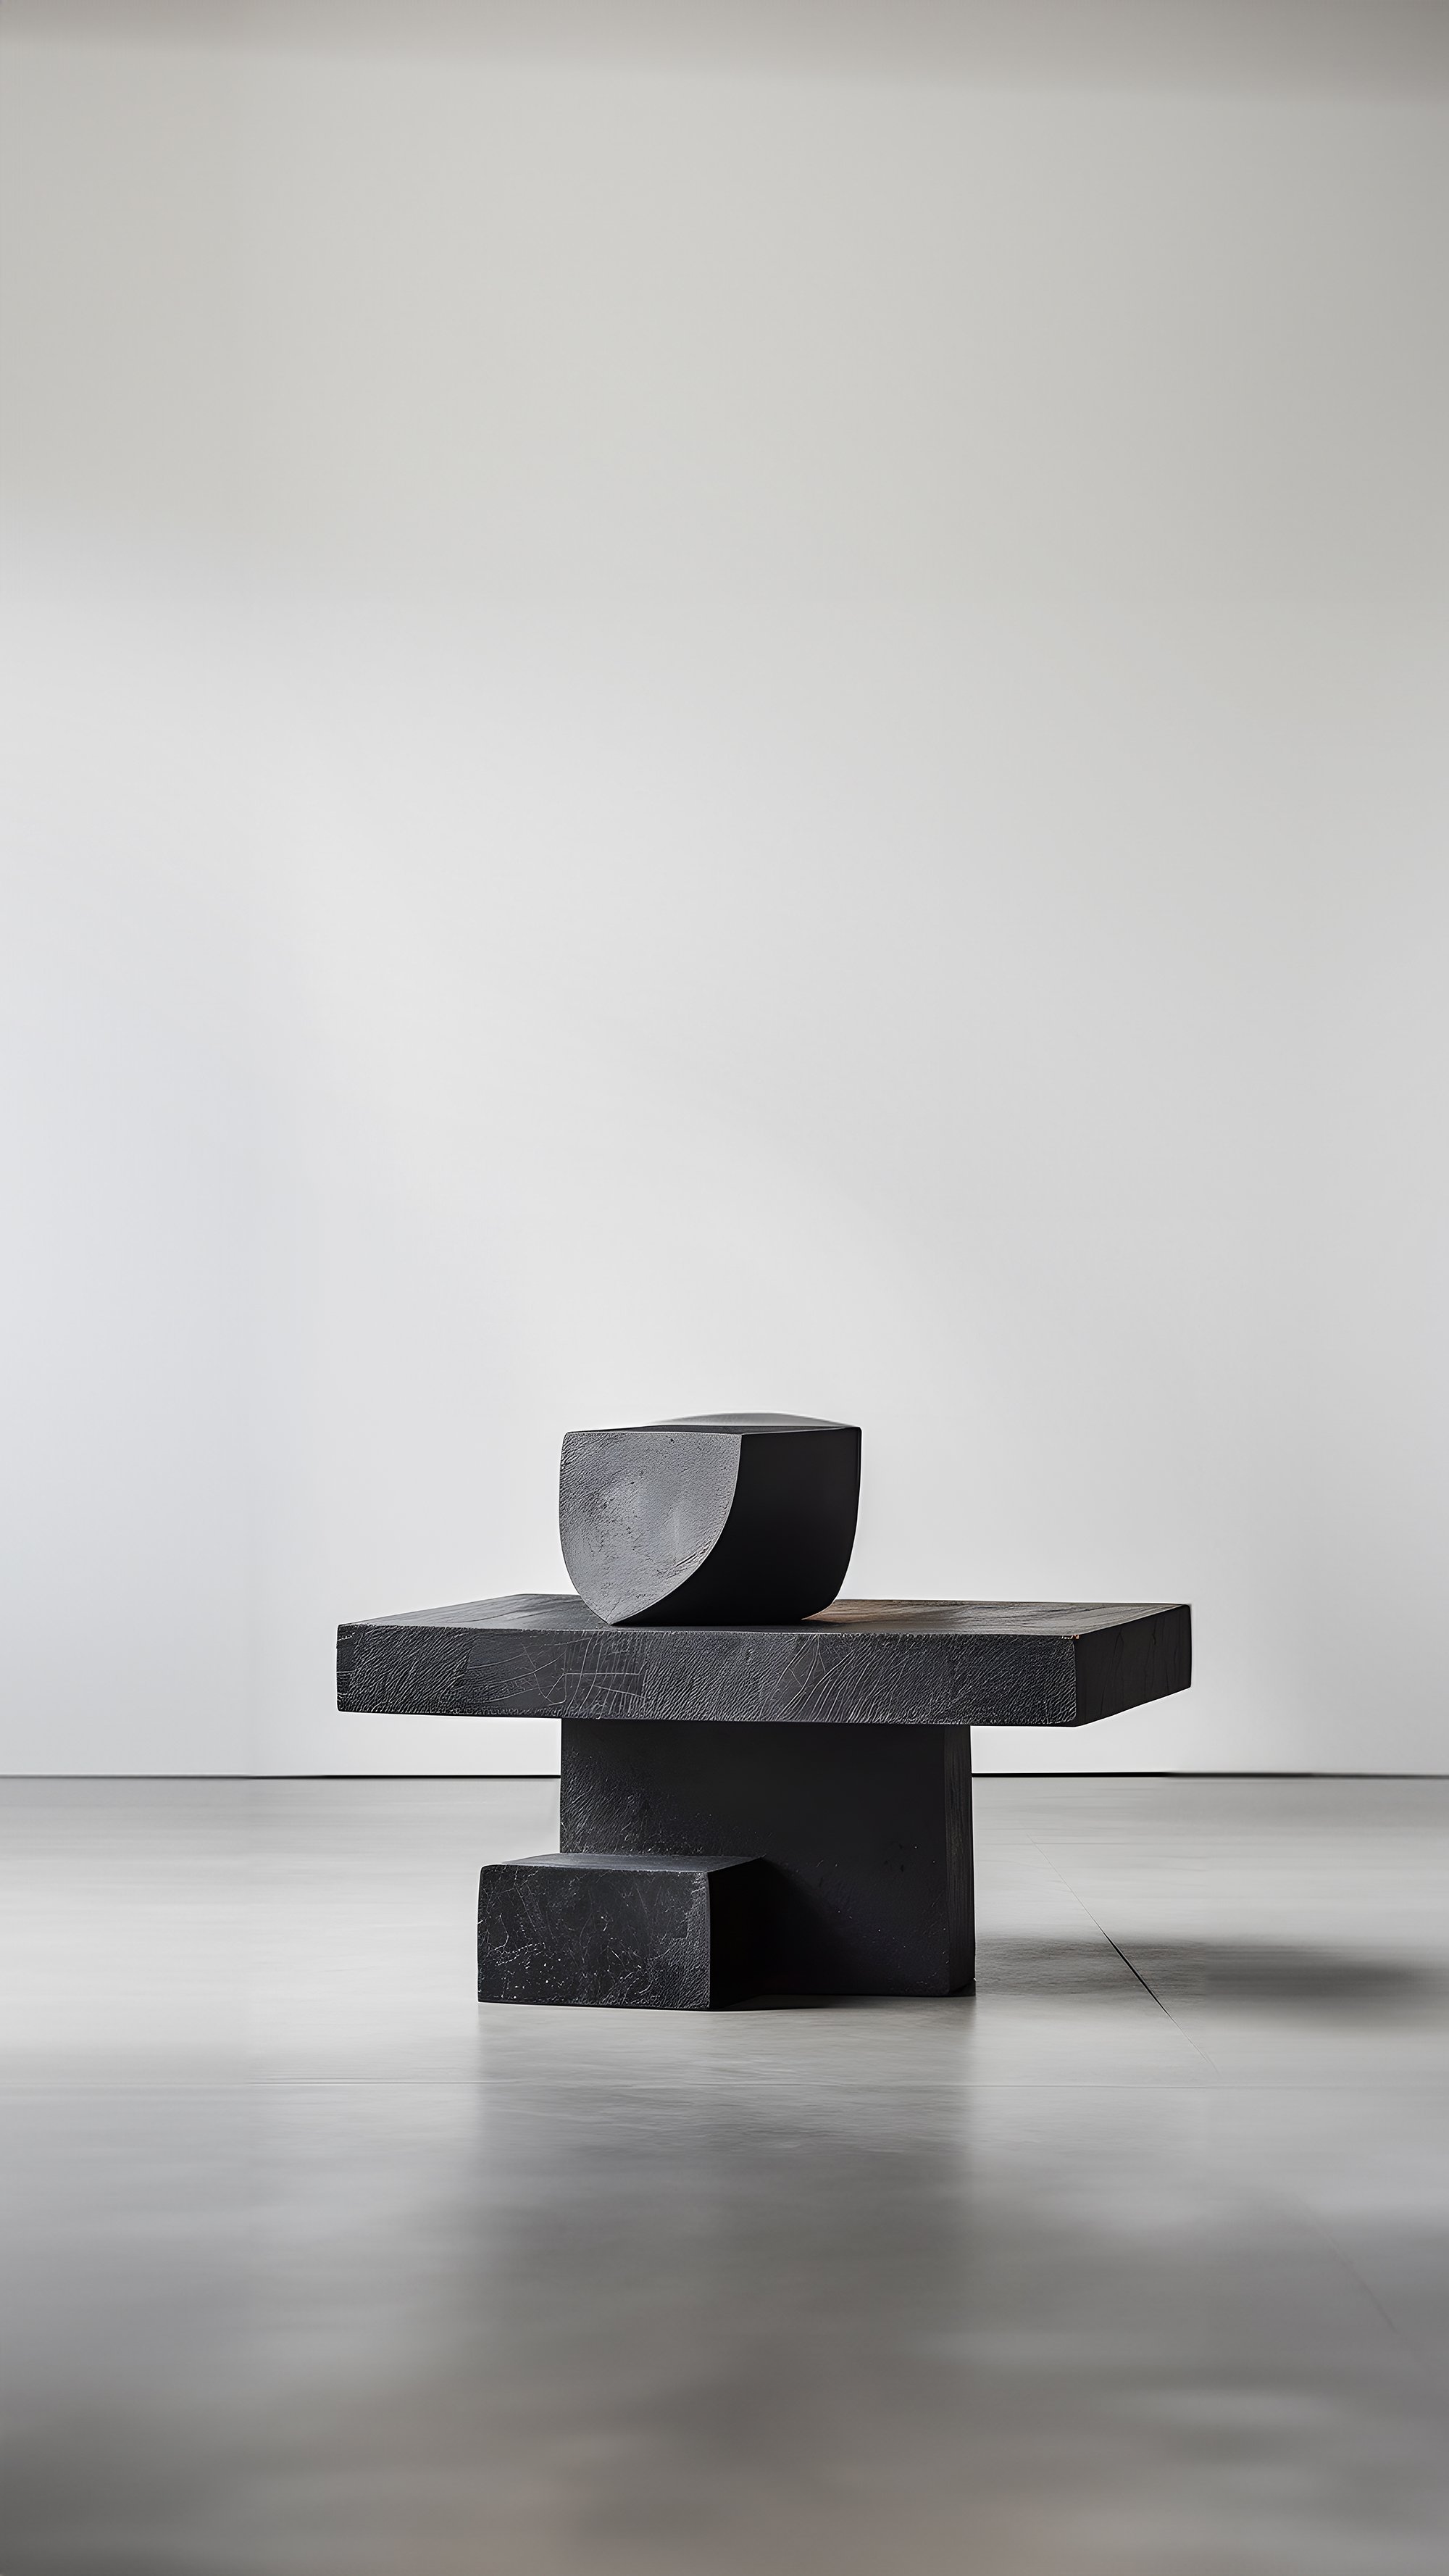 Sculptural Unseen Force #2 Joel Escalona's Solid Wood Table, Modern Art Piece —4.jpg